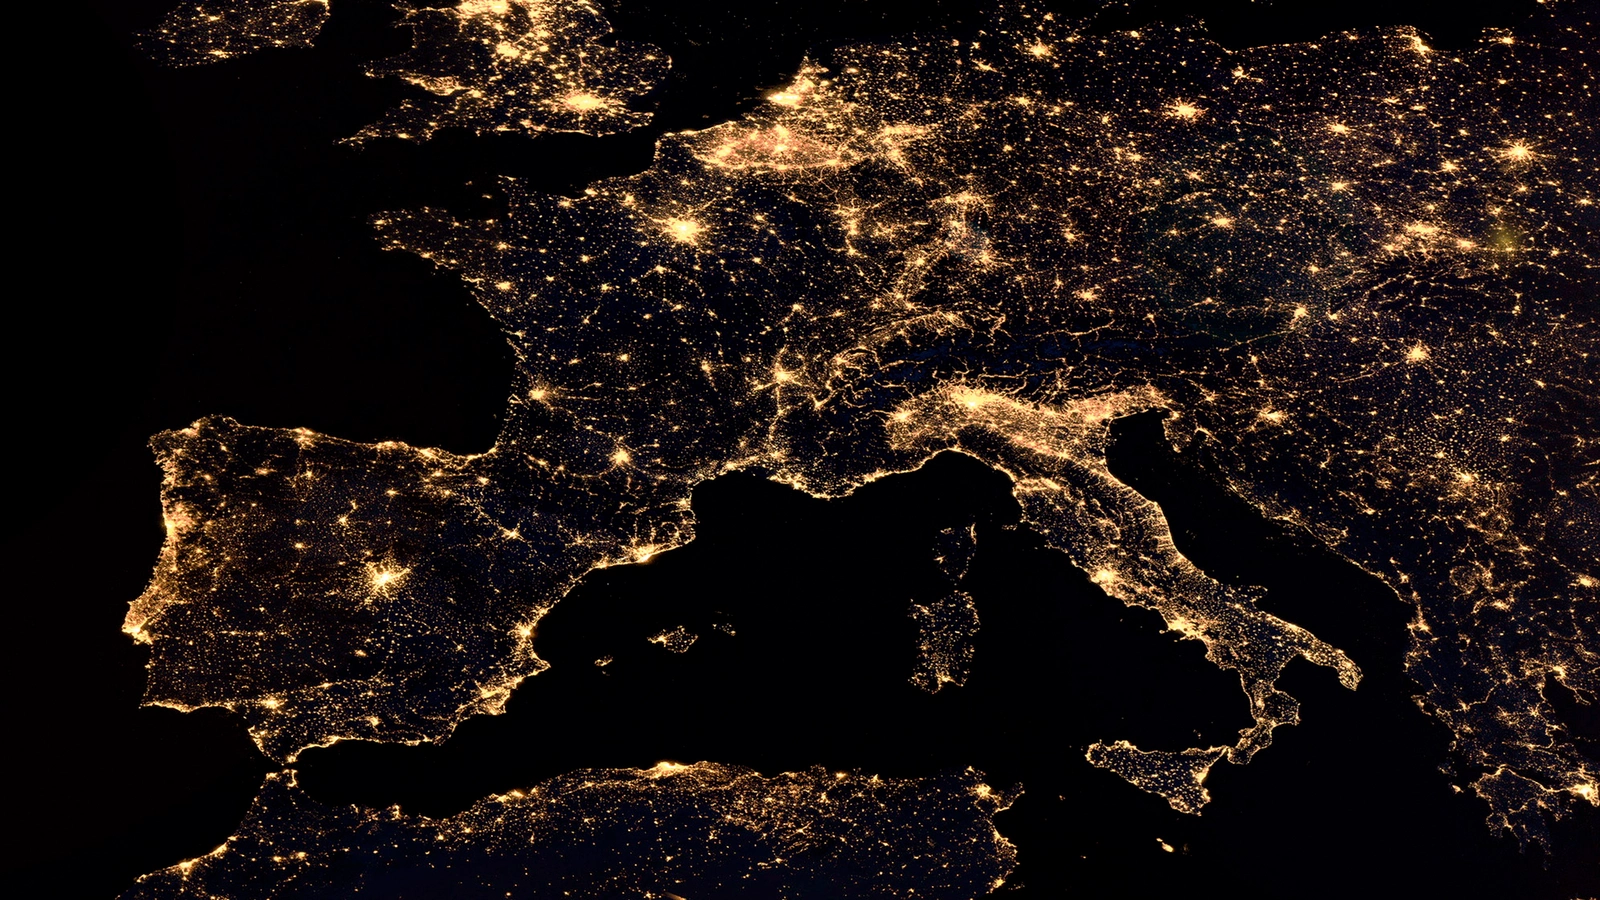 Das Bild zeigt geographisch Europa von oben, jedoch sind die Länder nur schemenhaft als Lichter dargestellt.